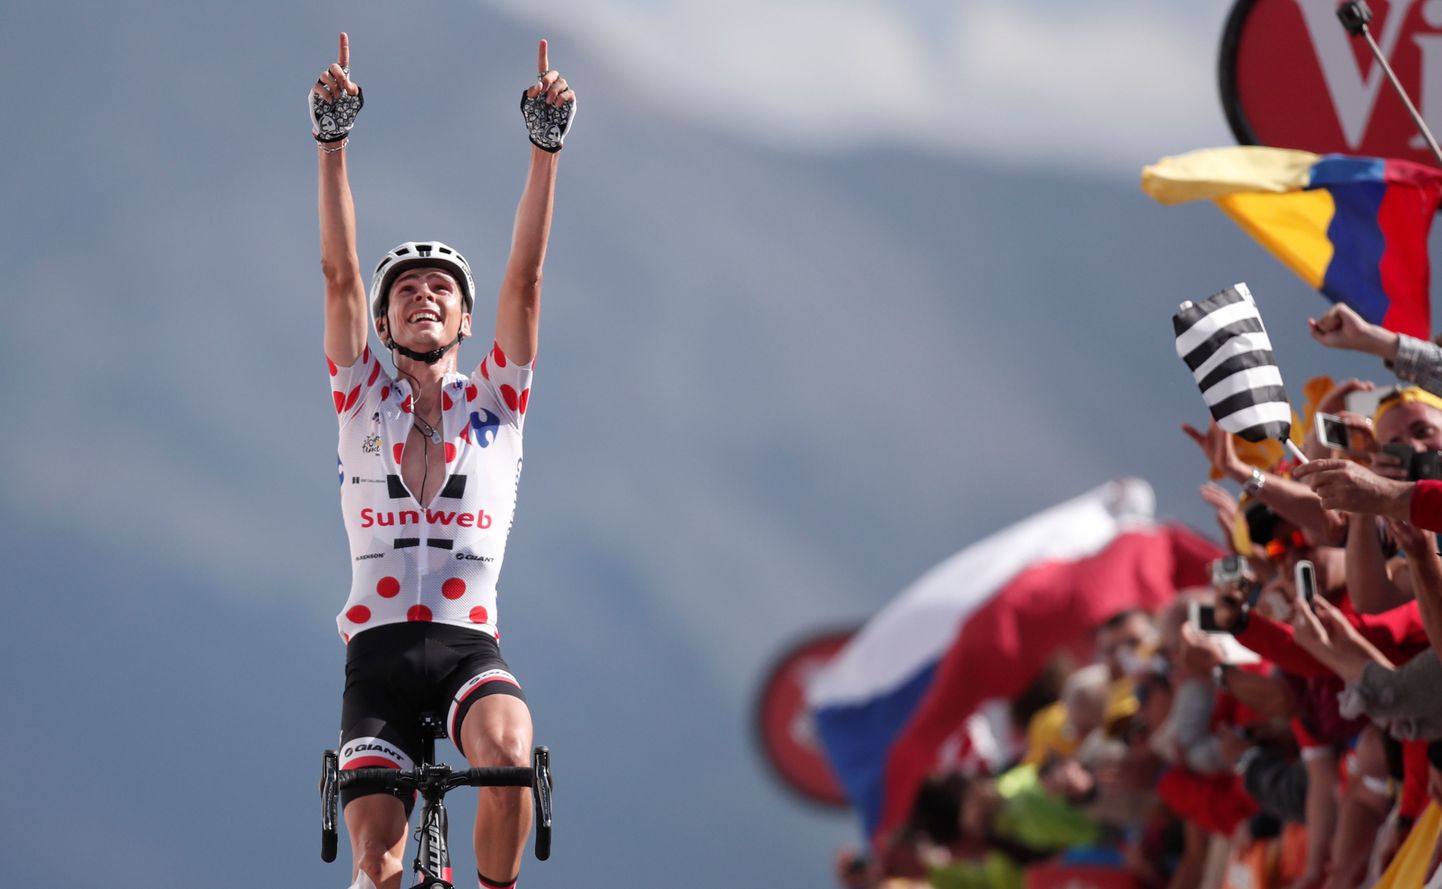 Mägedekuningale mõeldud mummulist särki kandev Warren Barguil (Sunweb) sai Tour de France'il teise etapivõidu.